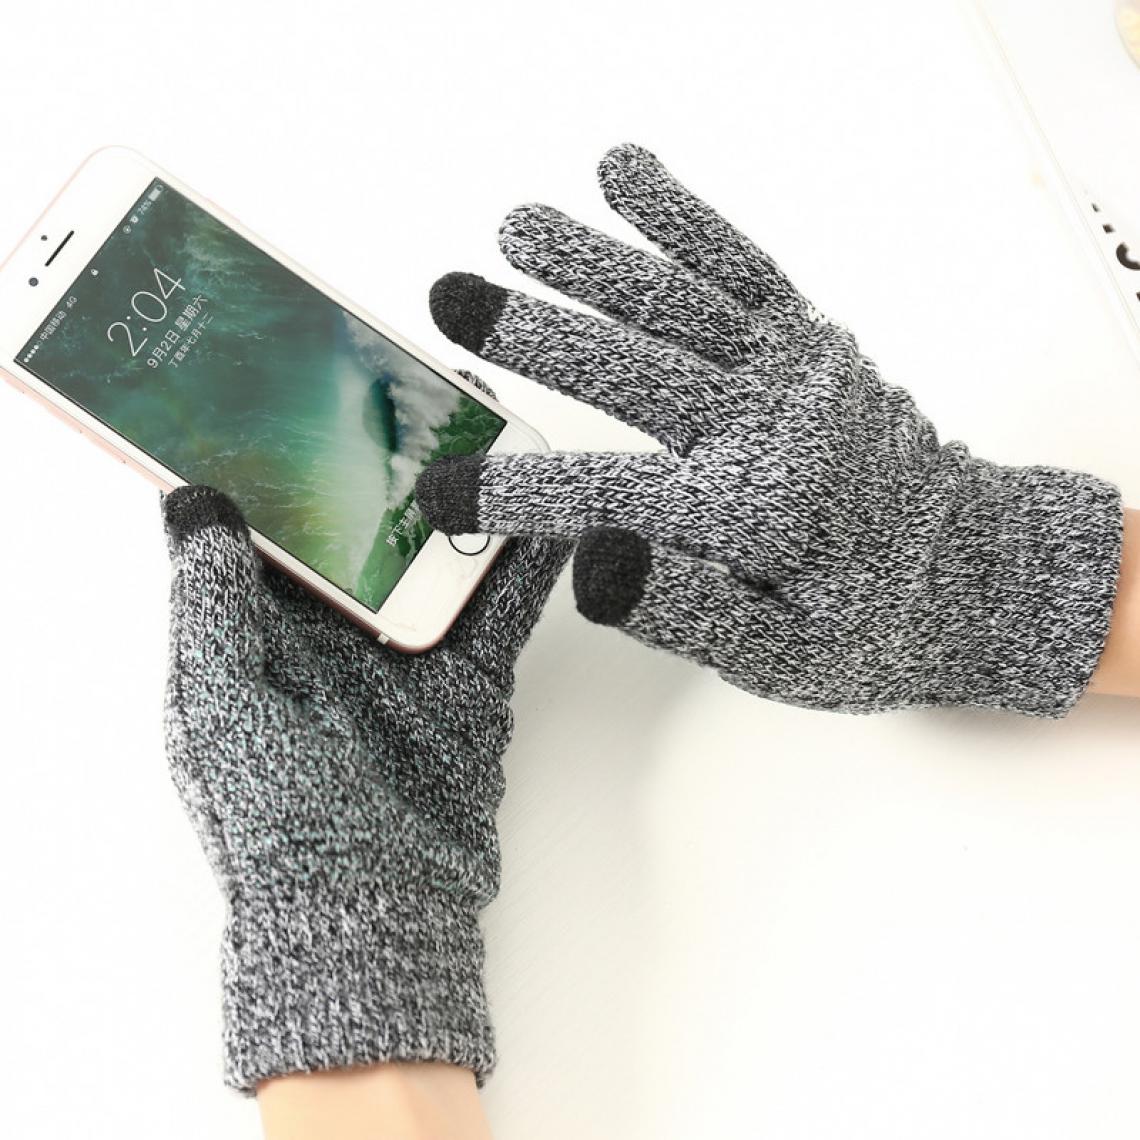 Shot - Gants Homme tactiles pour SONY Xperia L1 Smartphone Taille M 3 doigts Hiver (GRIS) - Autres accessoires smartphone